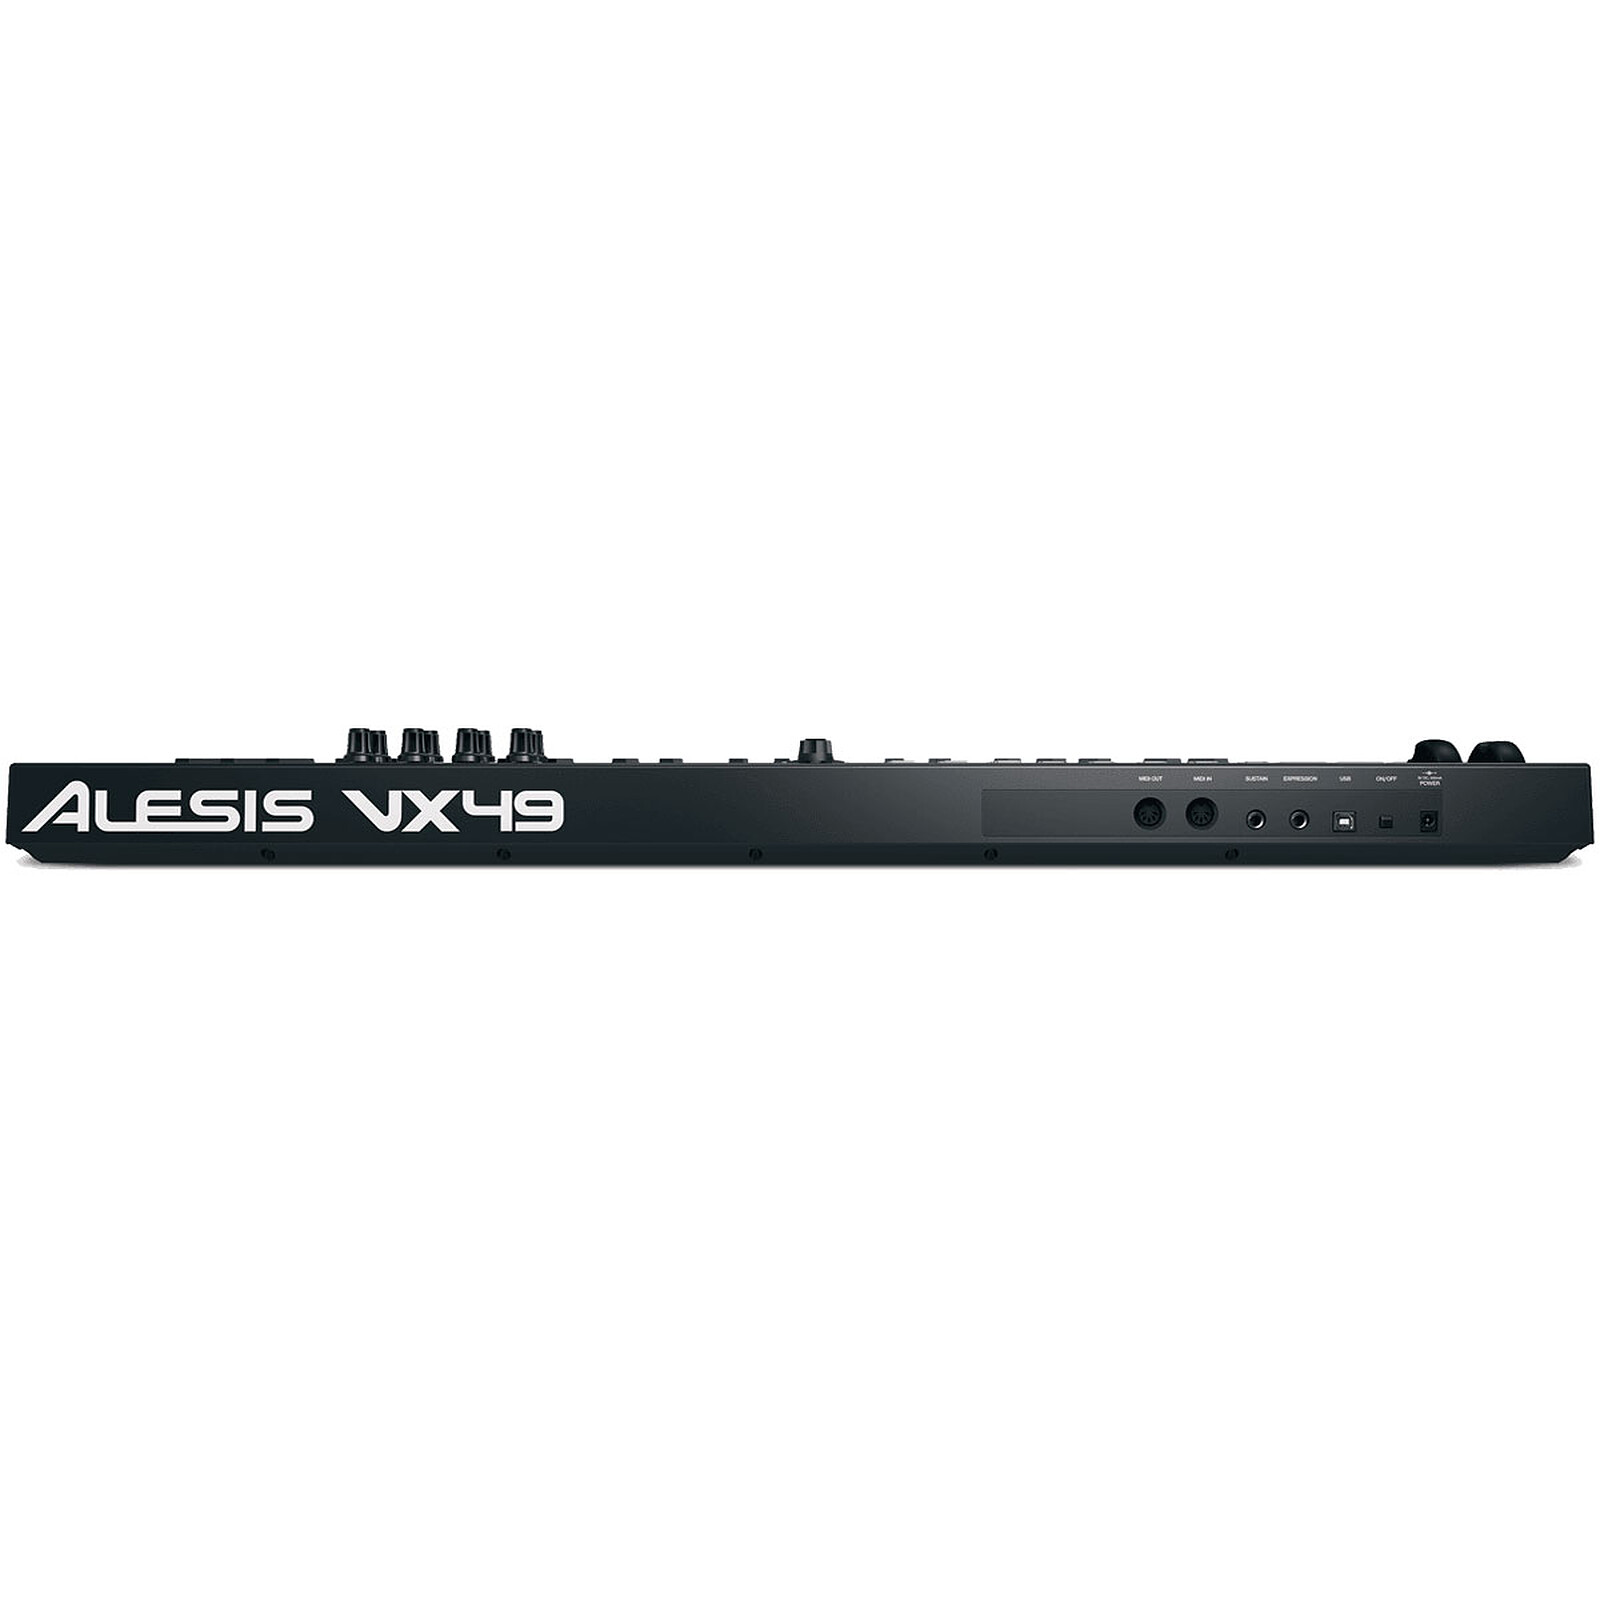 La Boite Noire du Musicien - ALESIS VX49 : clavier maître avec intégration  VST